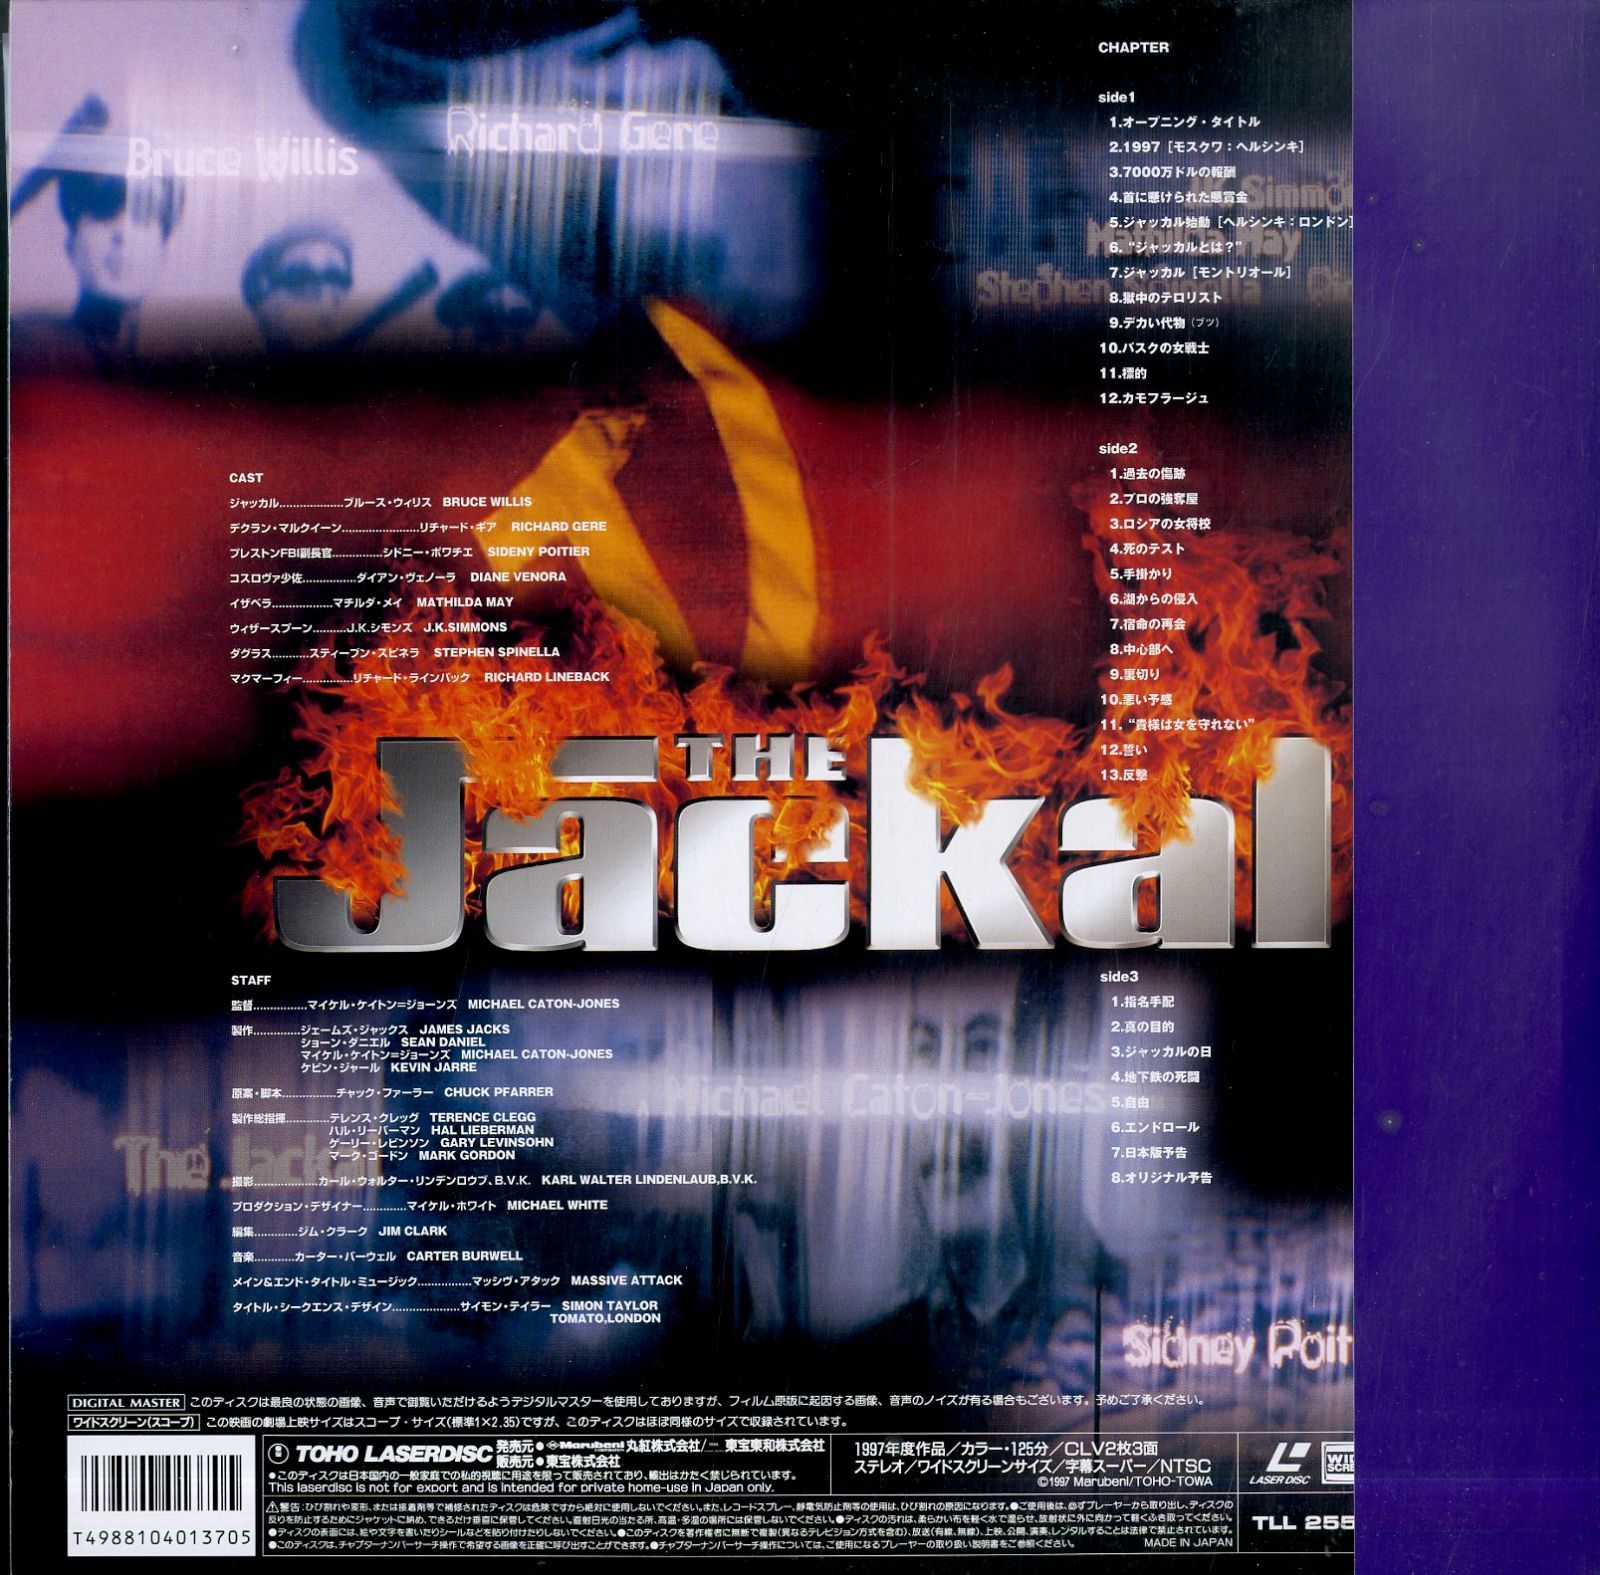 LD2枚 / マイケル・ケイトン＝ジョーンズ(監督) / リチャード・ギア / ブルース・ウィリス / ジャッカル The Jackal 1997  [Widescreen] (1999年・TLL-2554)